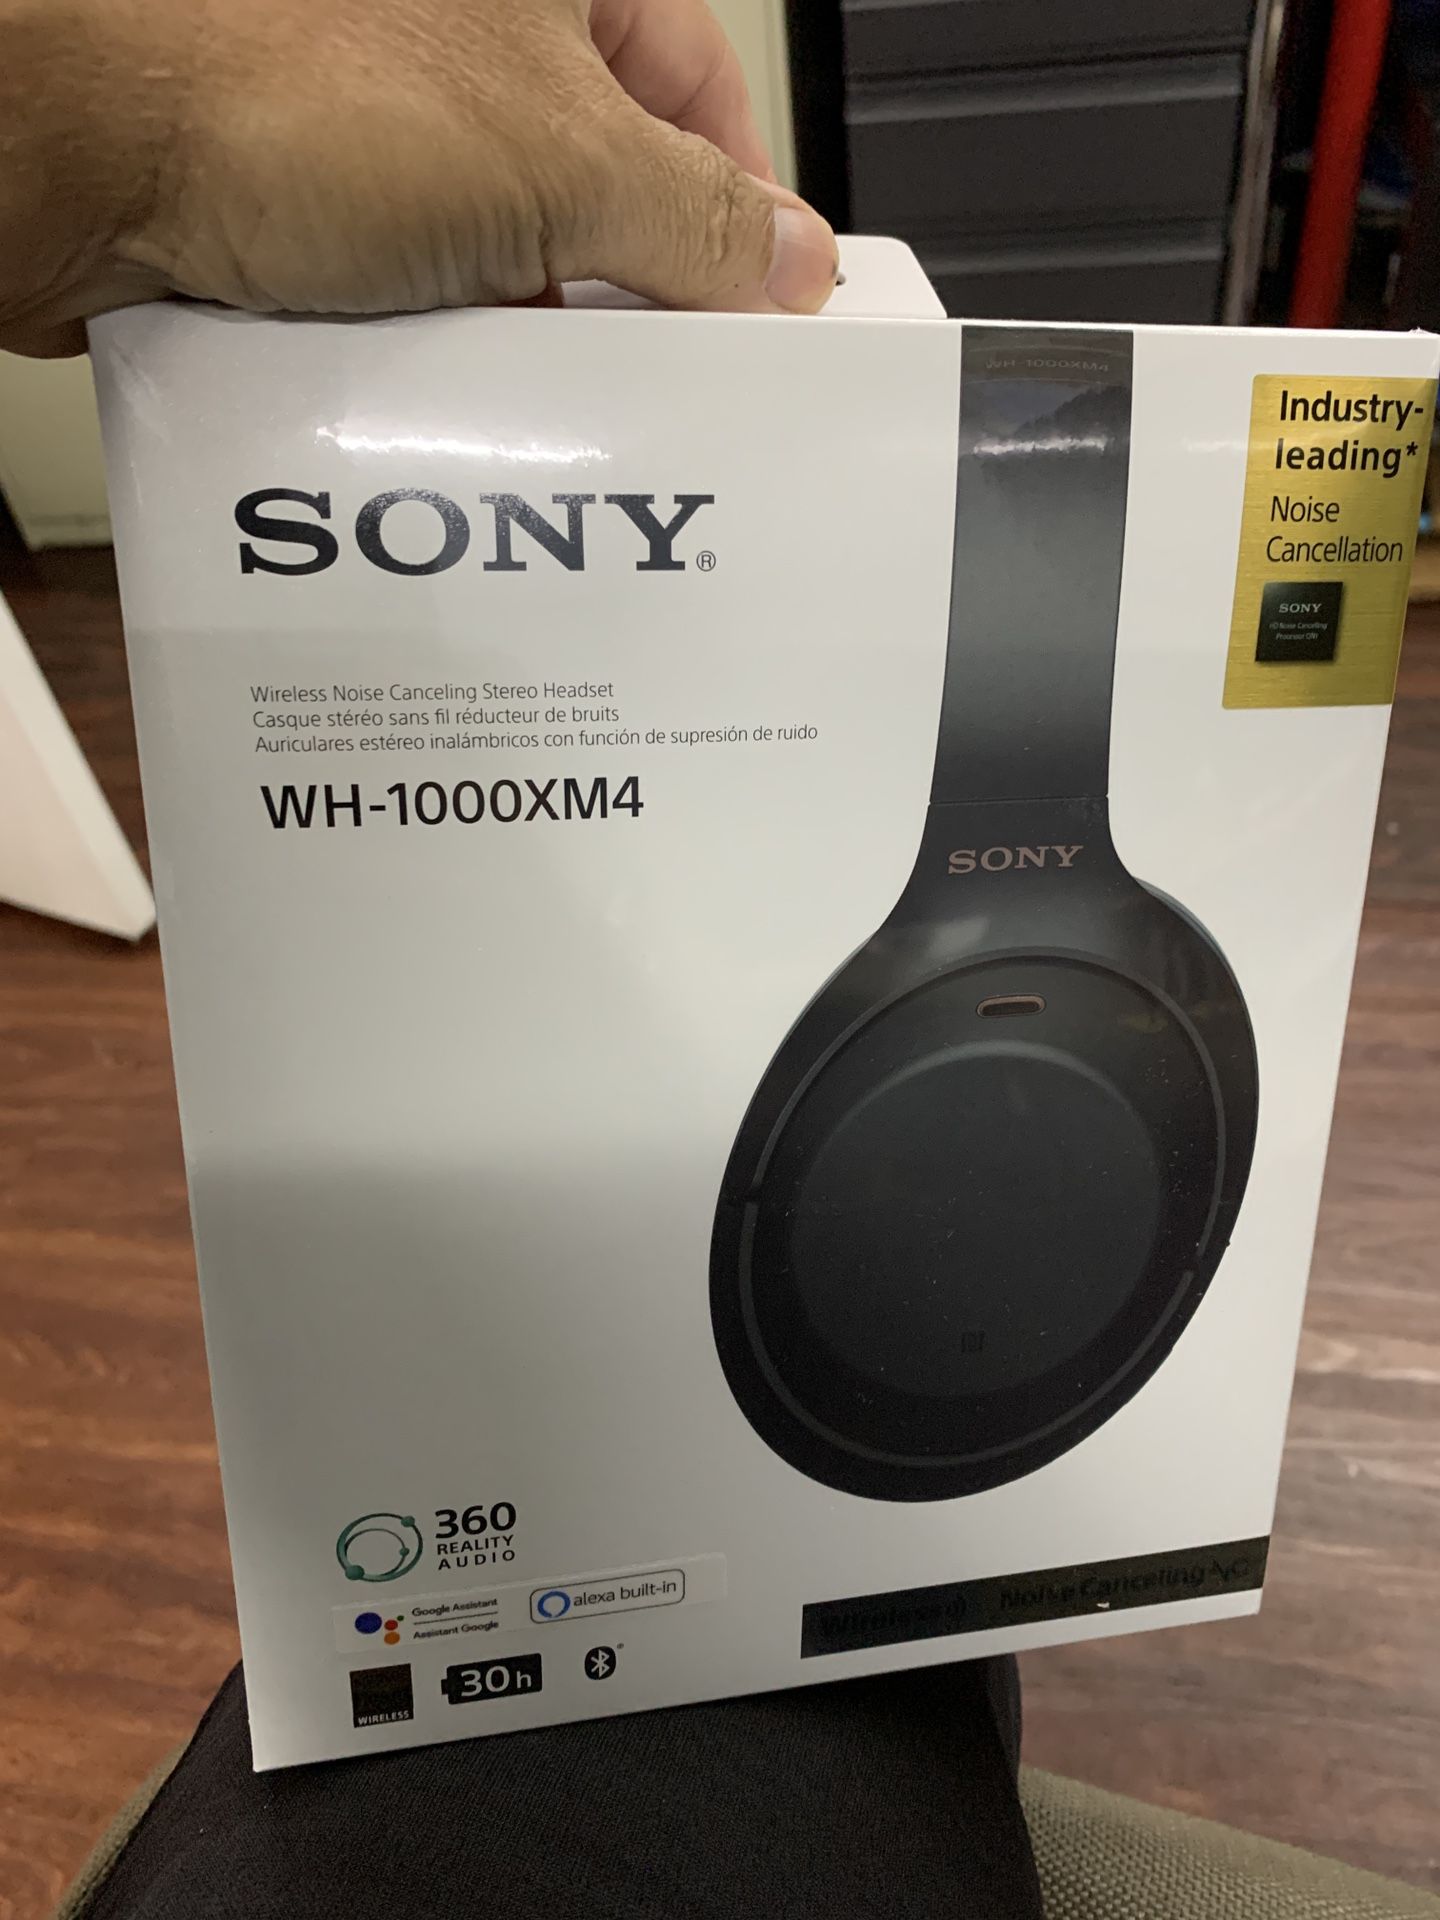 Sony WH-1000XM4 headphones new sealed